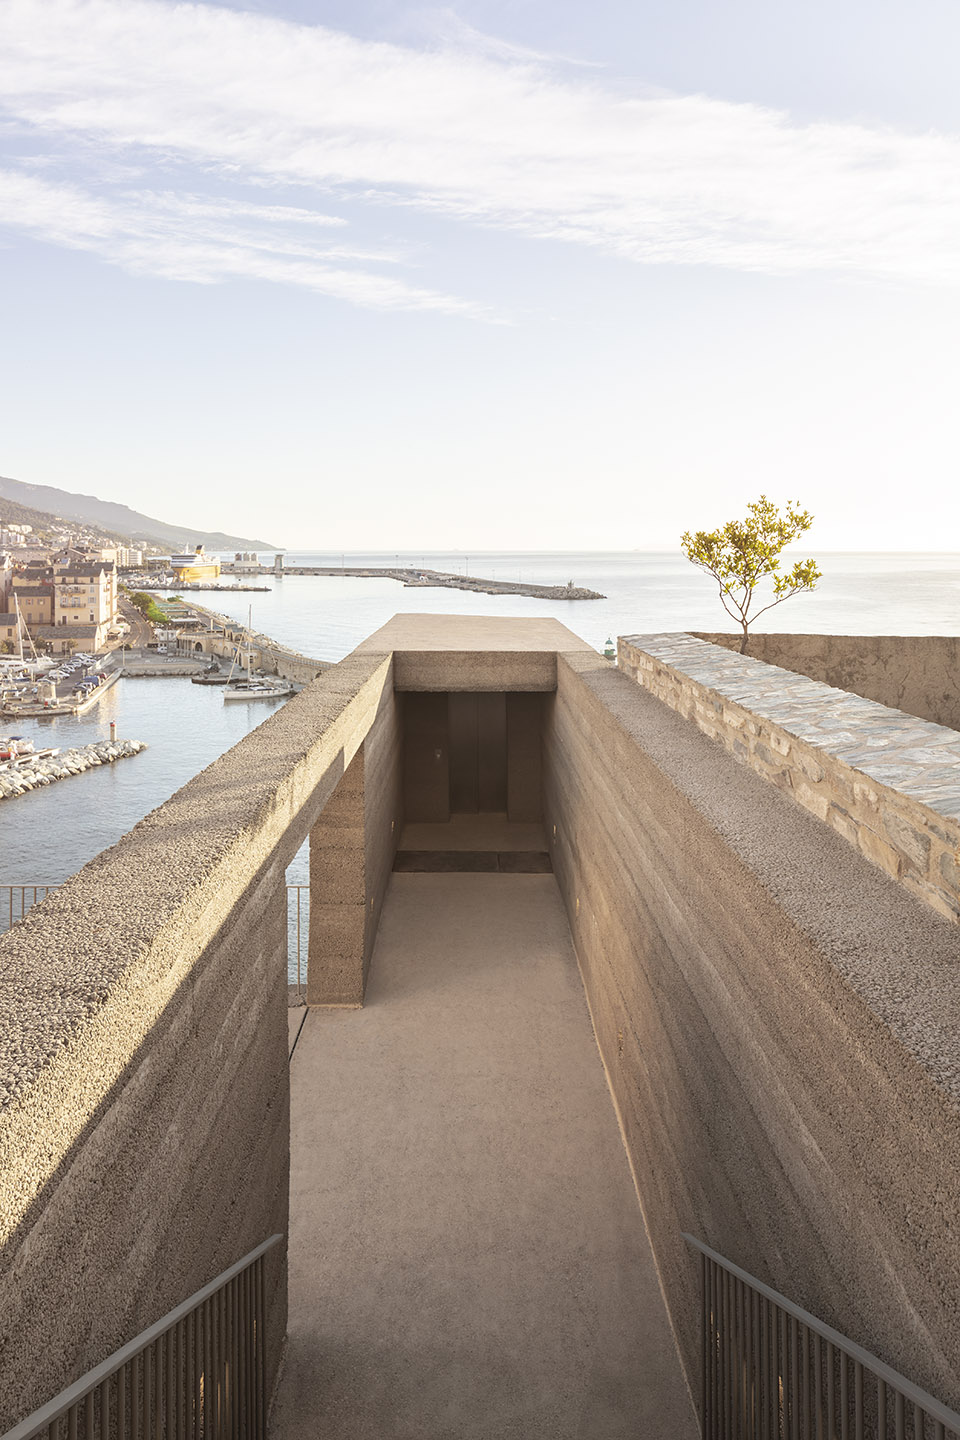 Bastia城堡与港口间的景观空间，法国/充满绿意的舒适连接-17